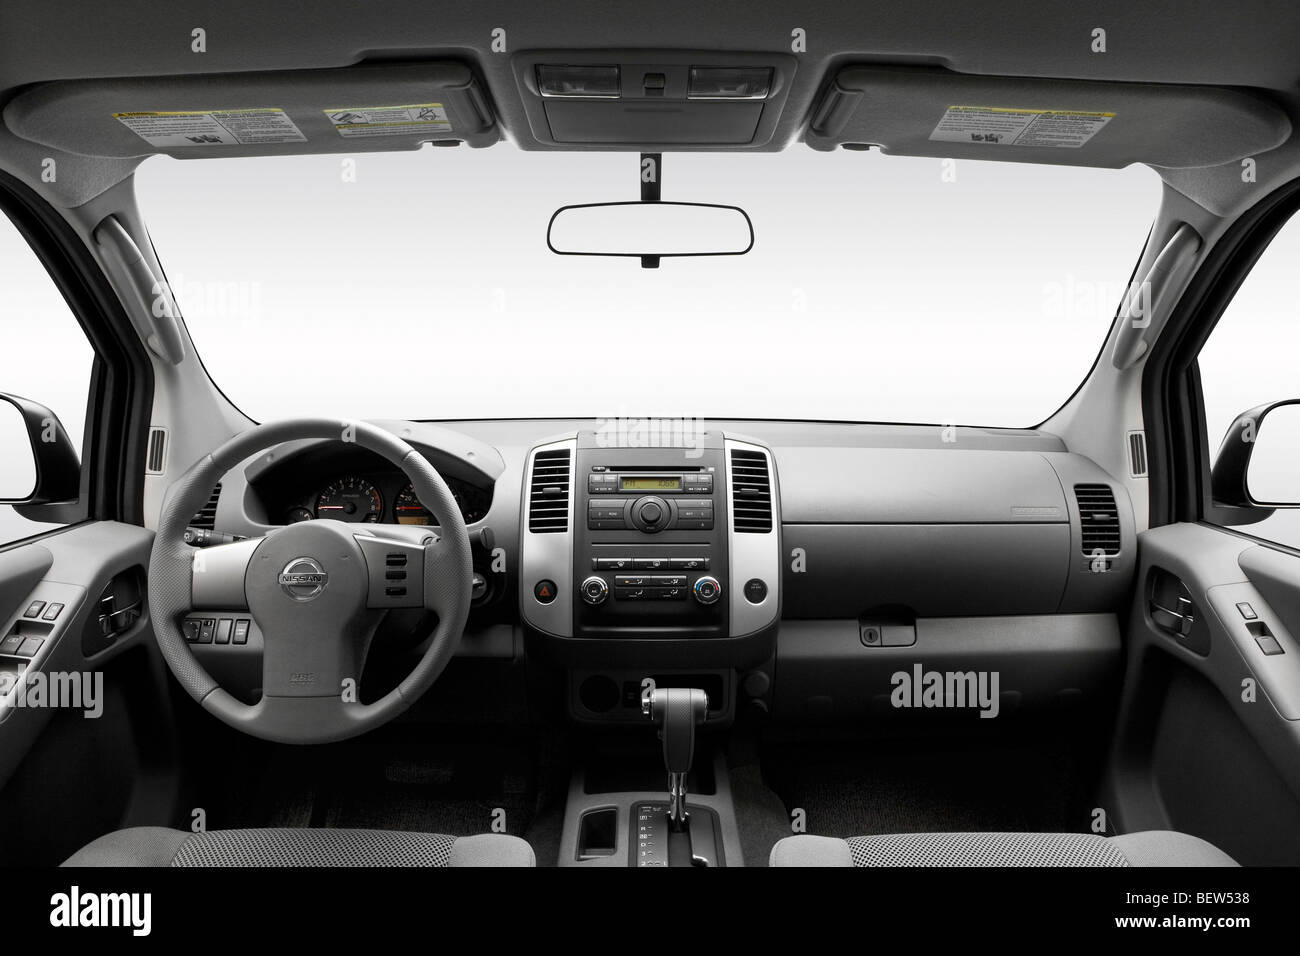 2010 Nissan Frontier SE in Silber - Armaturenbrett, Mittelkonsole, Getriebe Schalthebel Ansicht Stockfoto